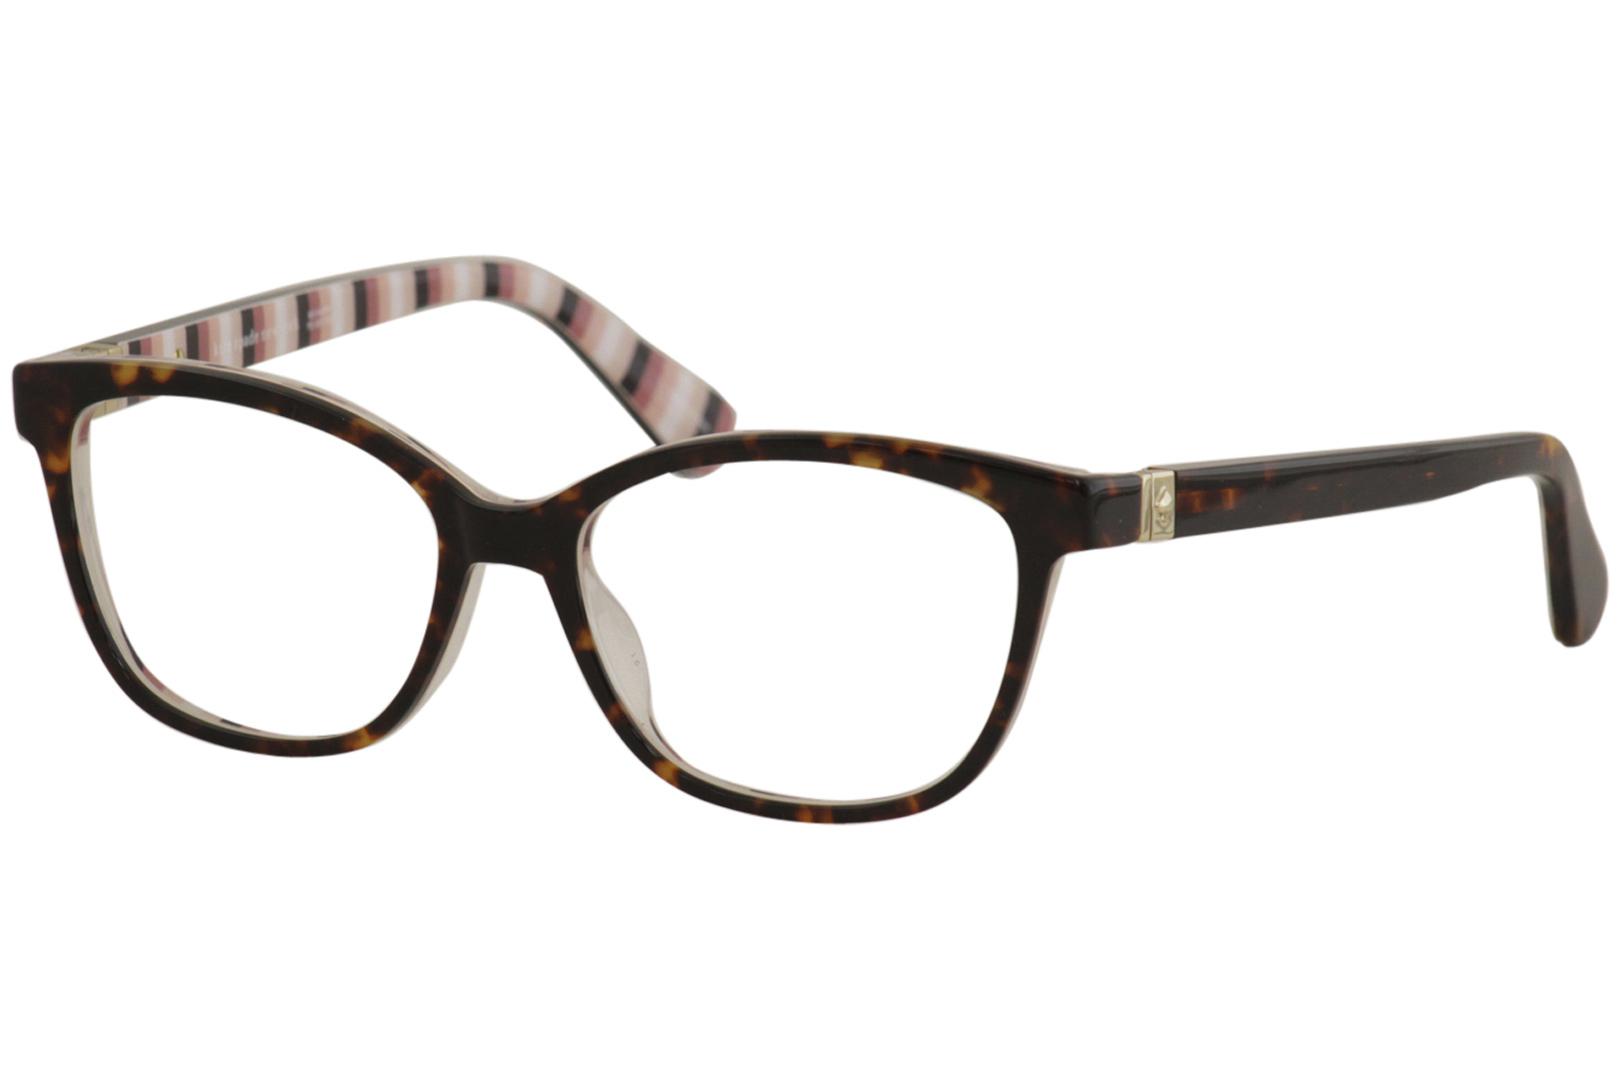 Kate Spade Women's Eyeglasses Emilyn 086 Dark Havana Full Rim Optical Frame  52mm 